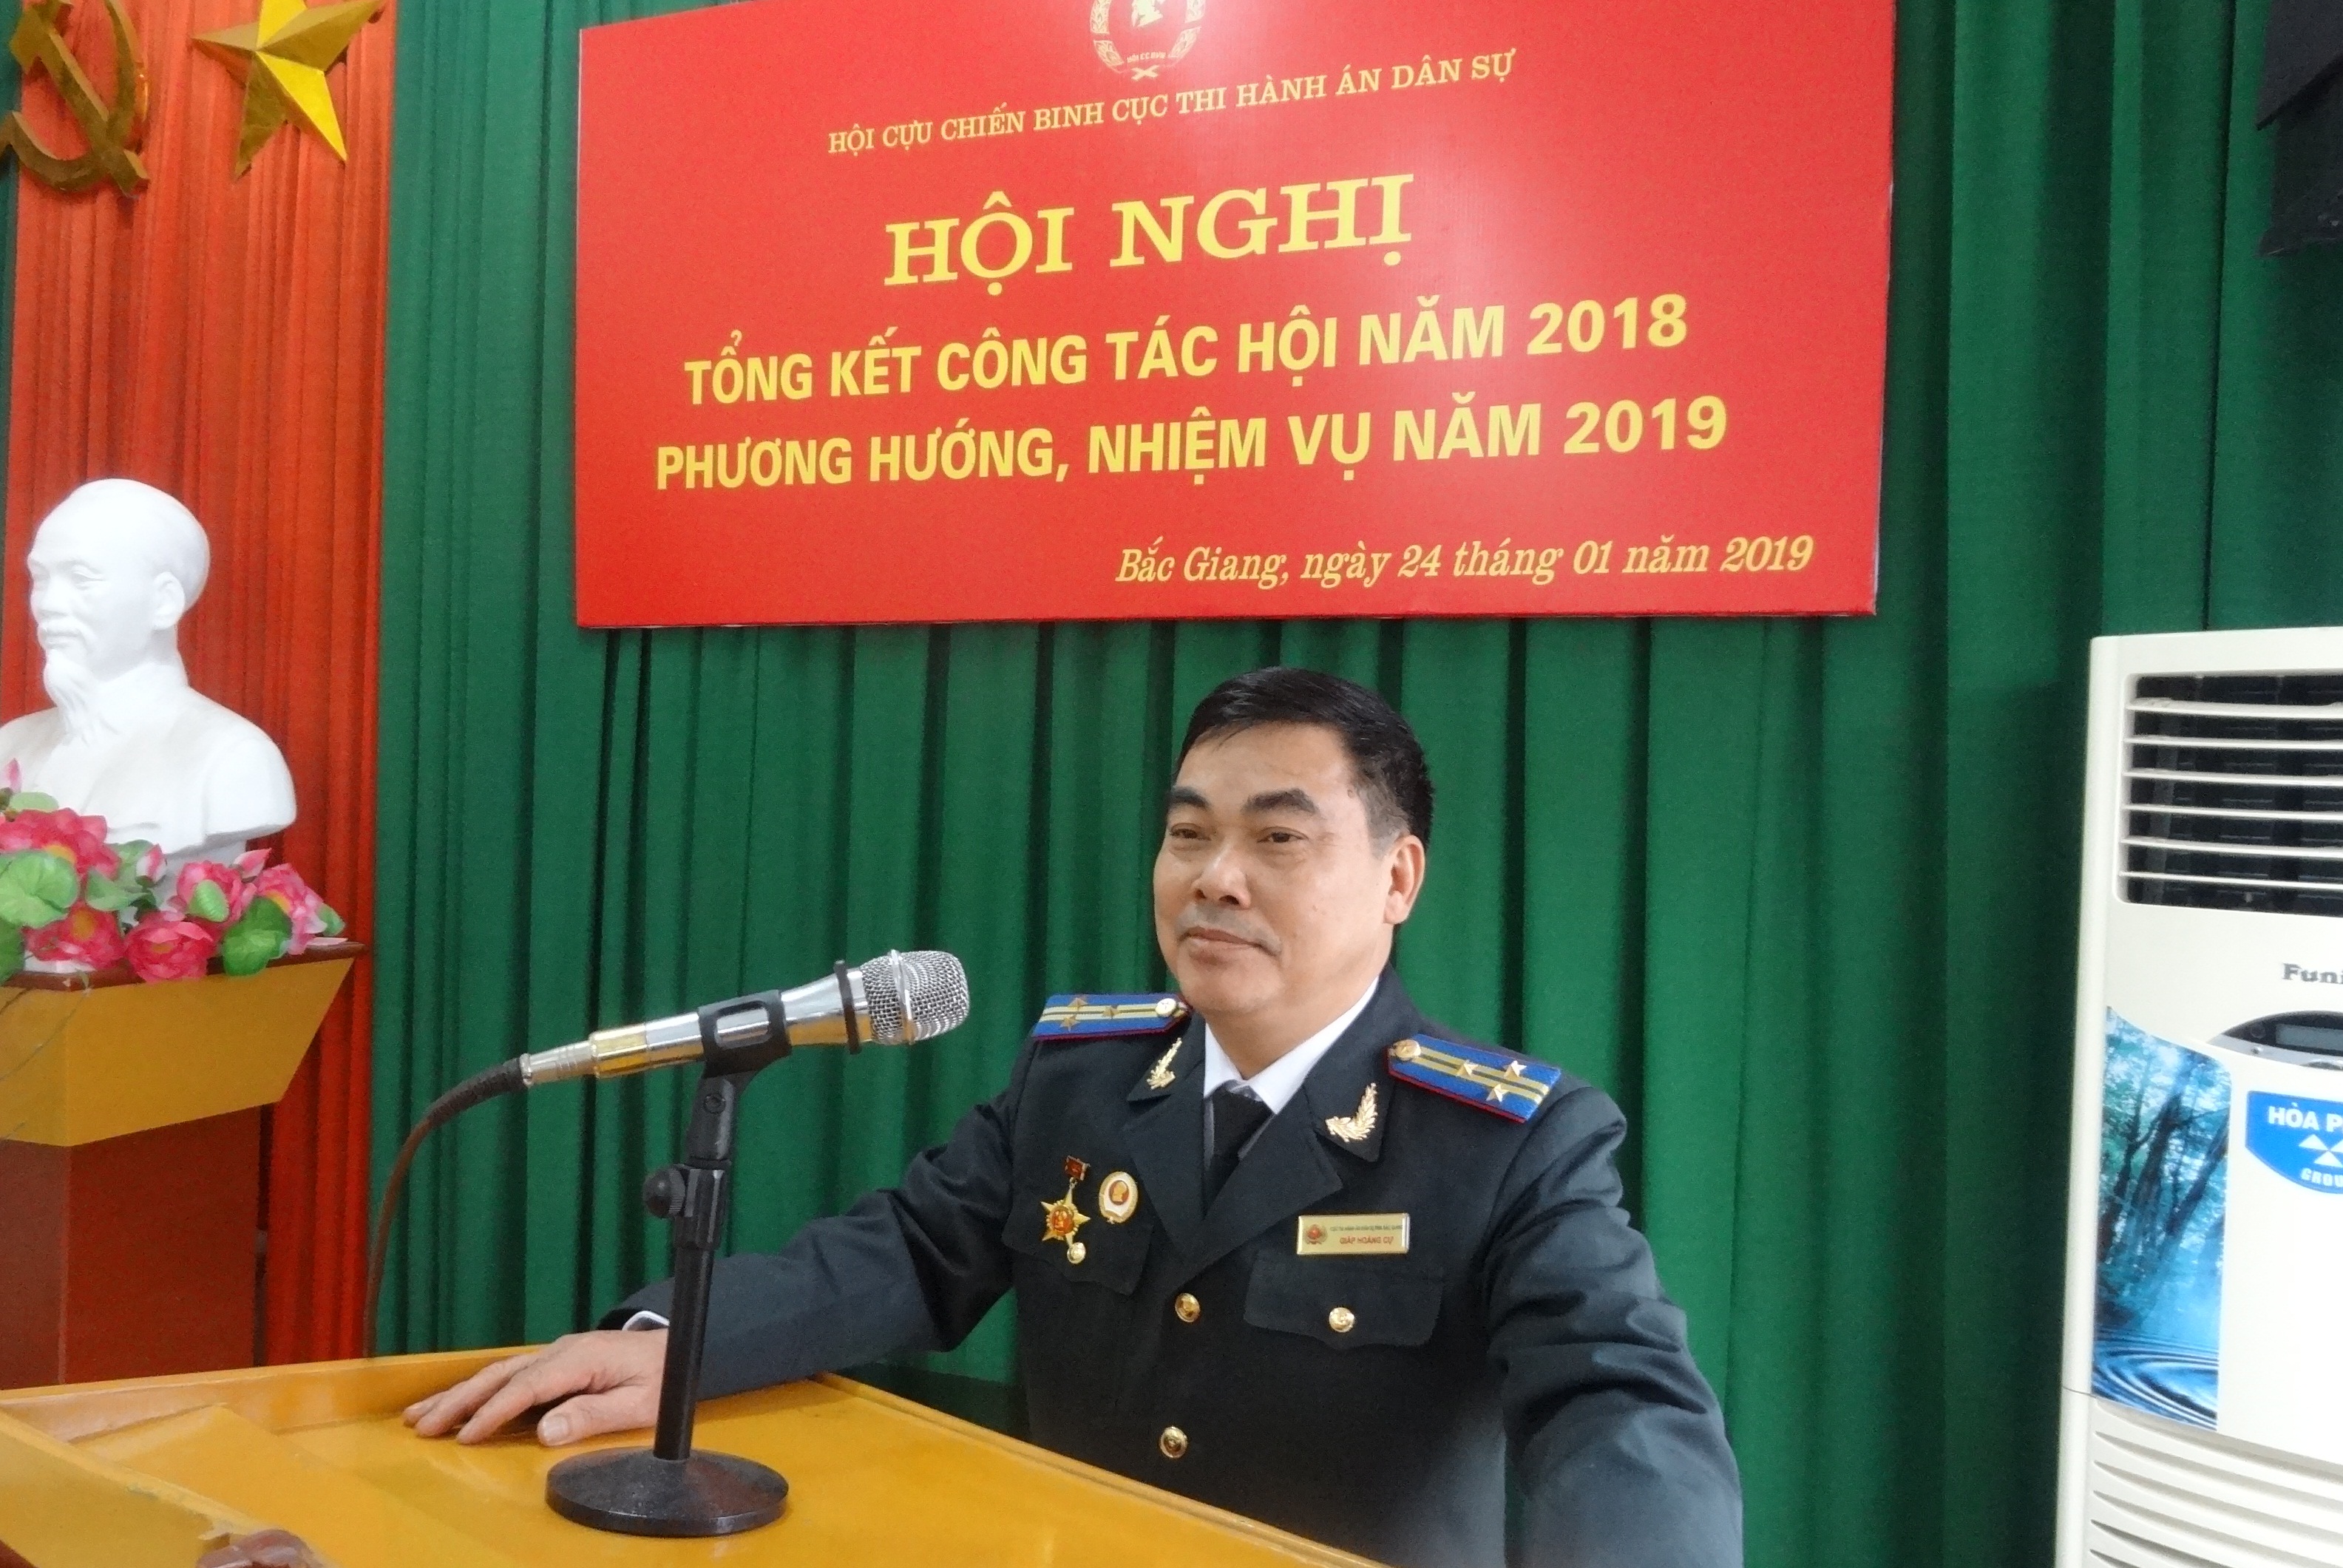 Hội Cựu chiến binh Cục THADS tỉnh Bắc Giang tổ chức Hội nghị tổng kết công tác hội năm 2018, phương hướng, nhiệm vụ năm 2019